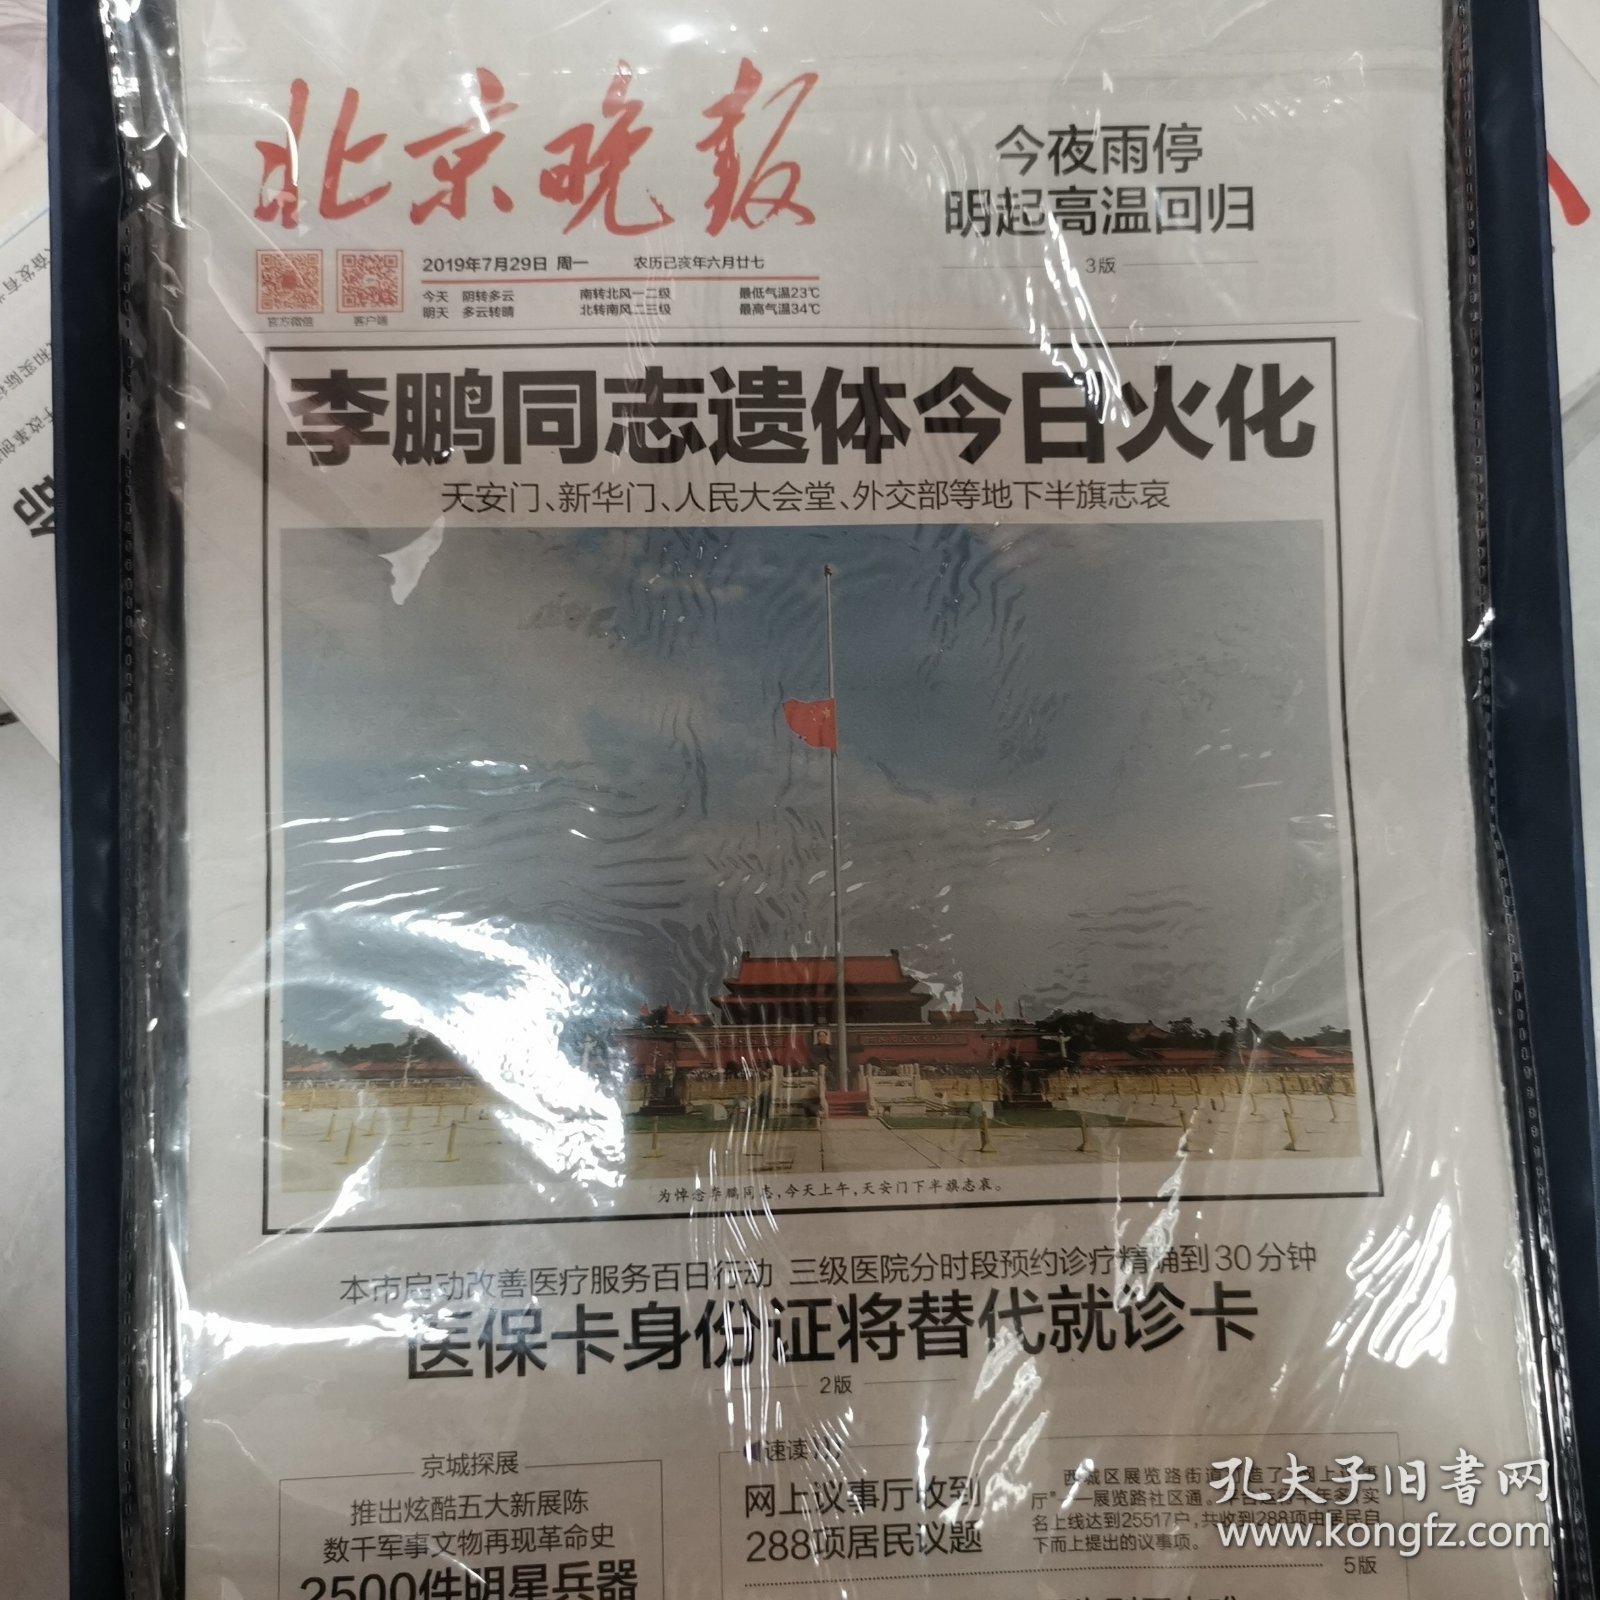 北京晚报 2019年7月24日 2019年月7月30日 2019.7.24 2019.7.30 一套两份 李鹏同志逝世火化